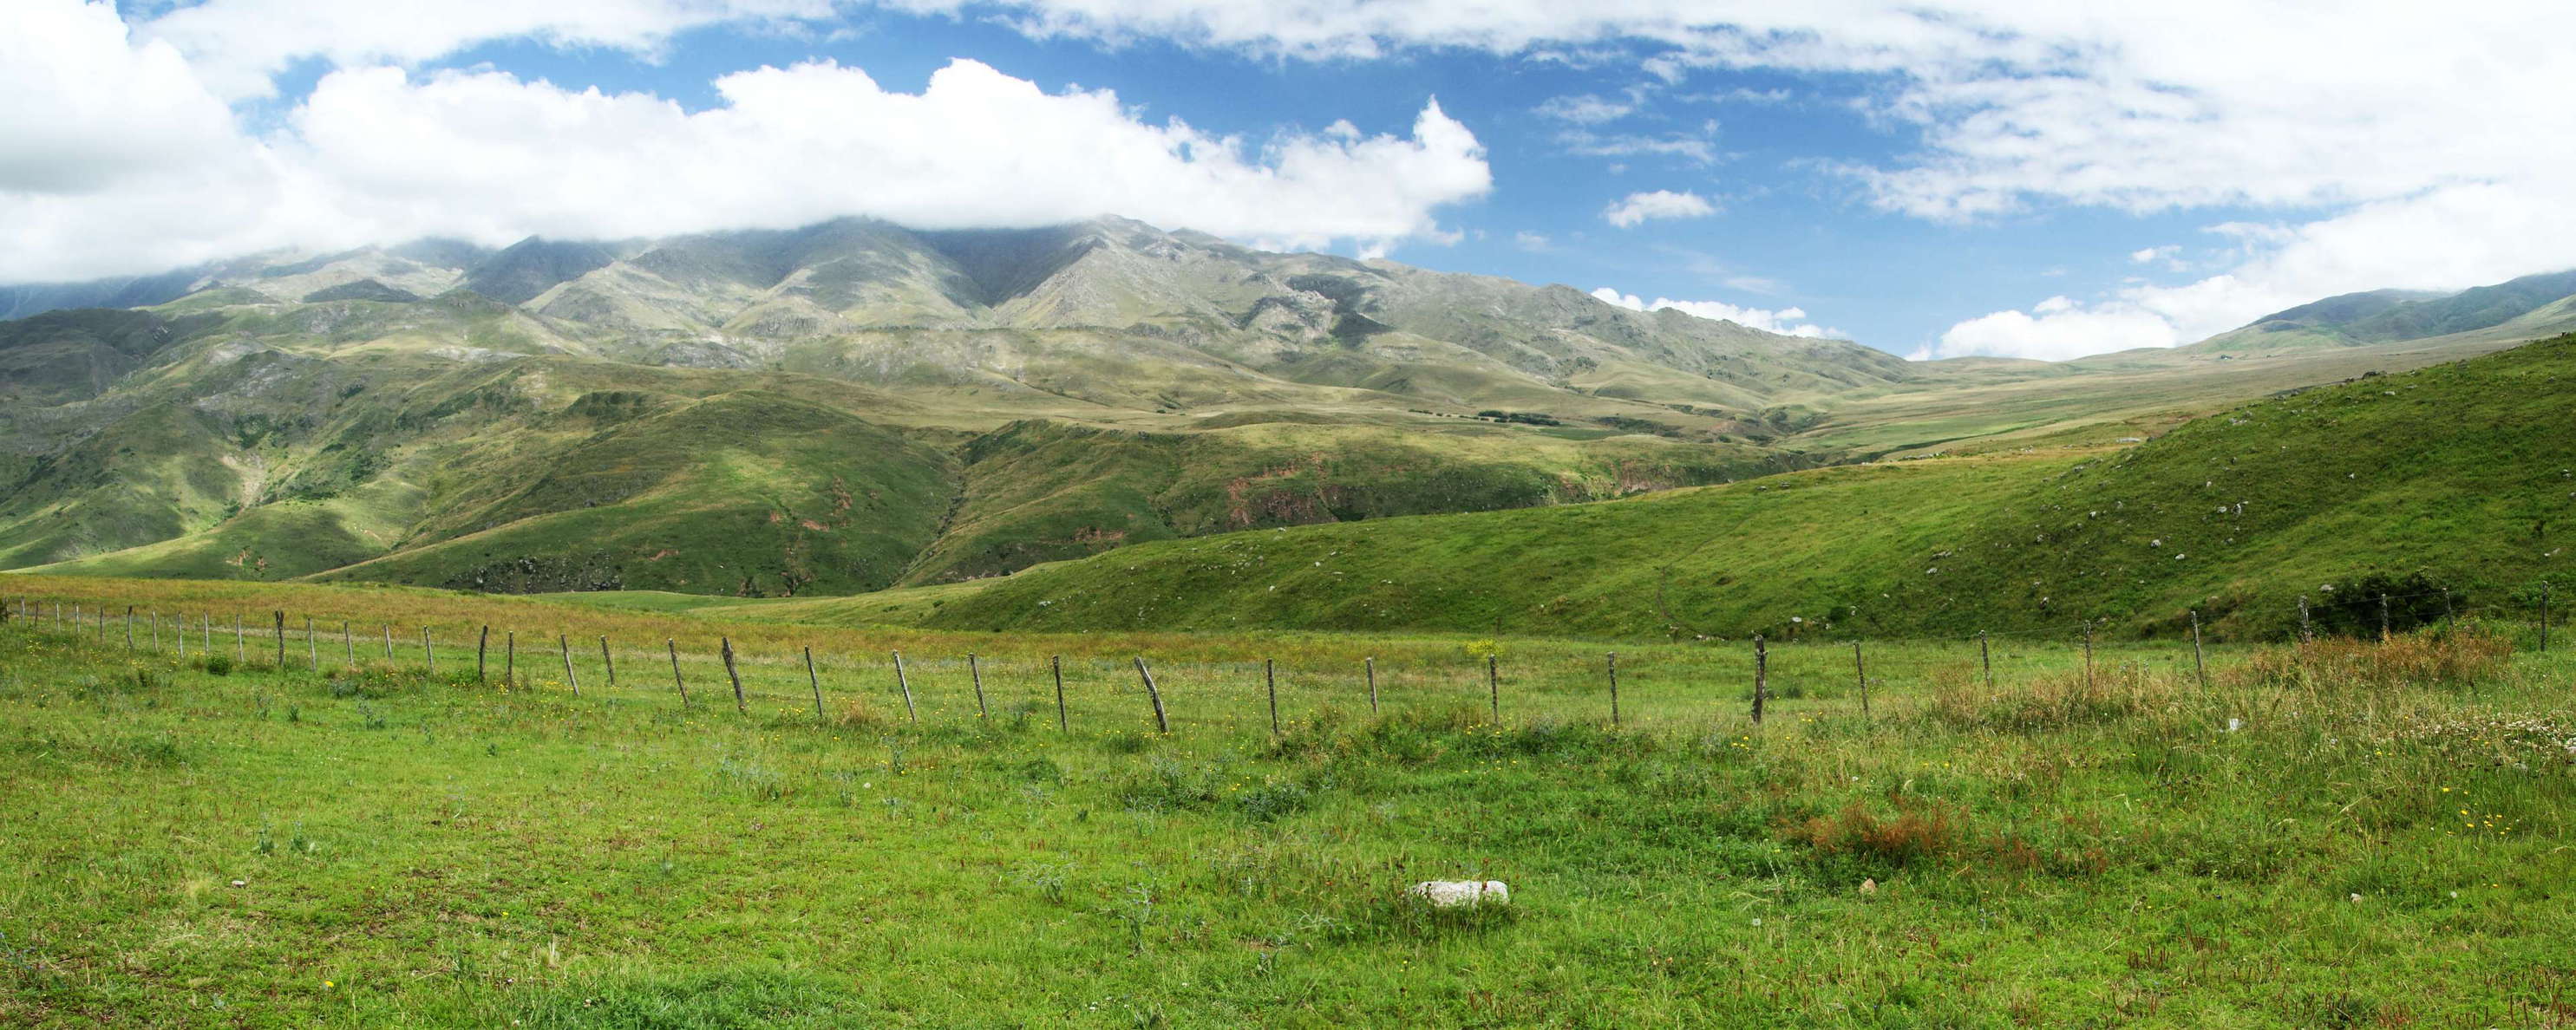 Sierra de Aconquija with mountain pastures